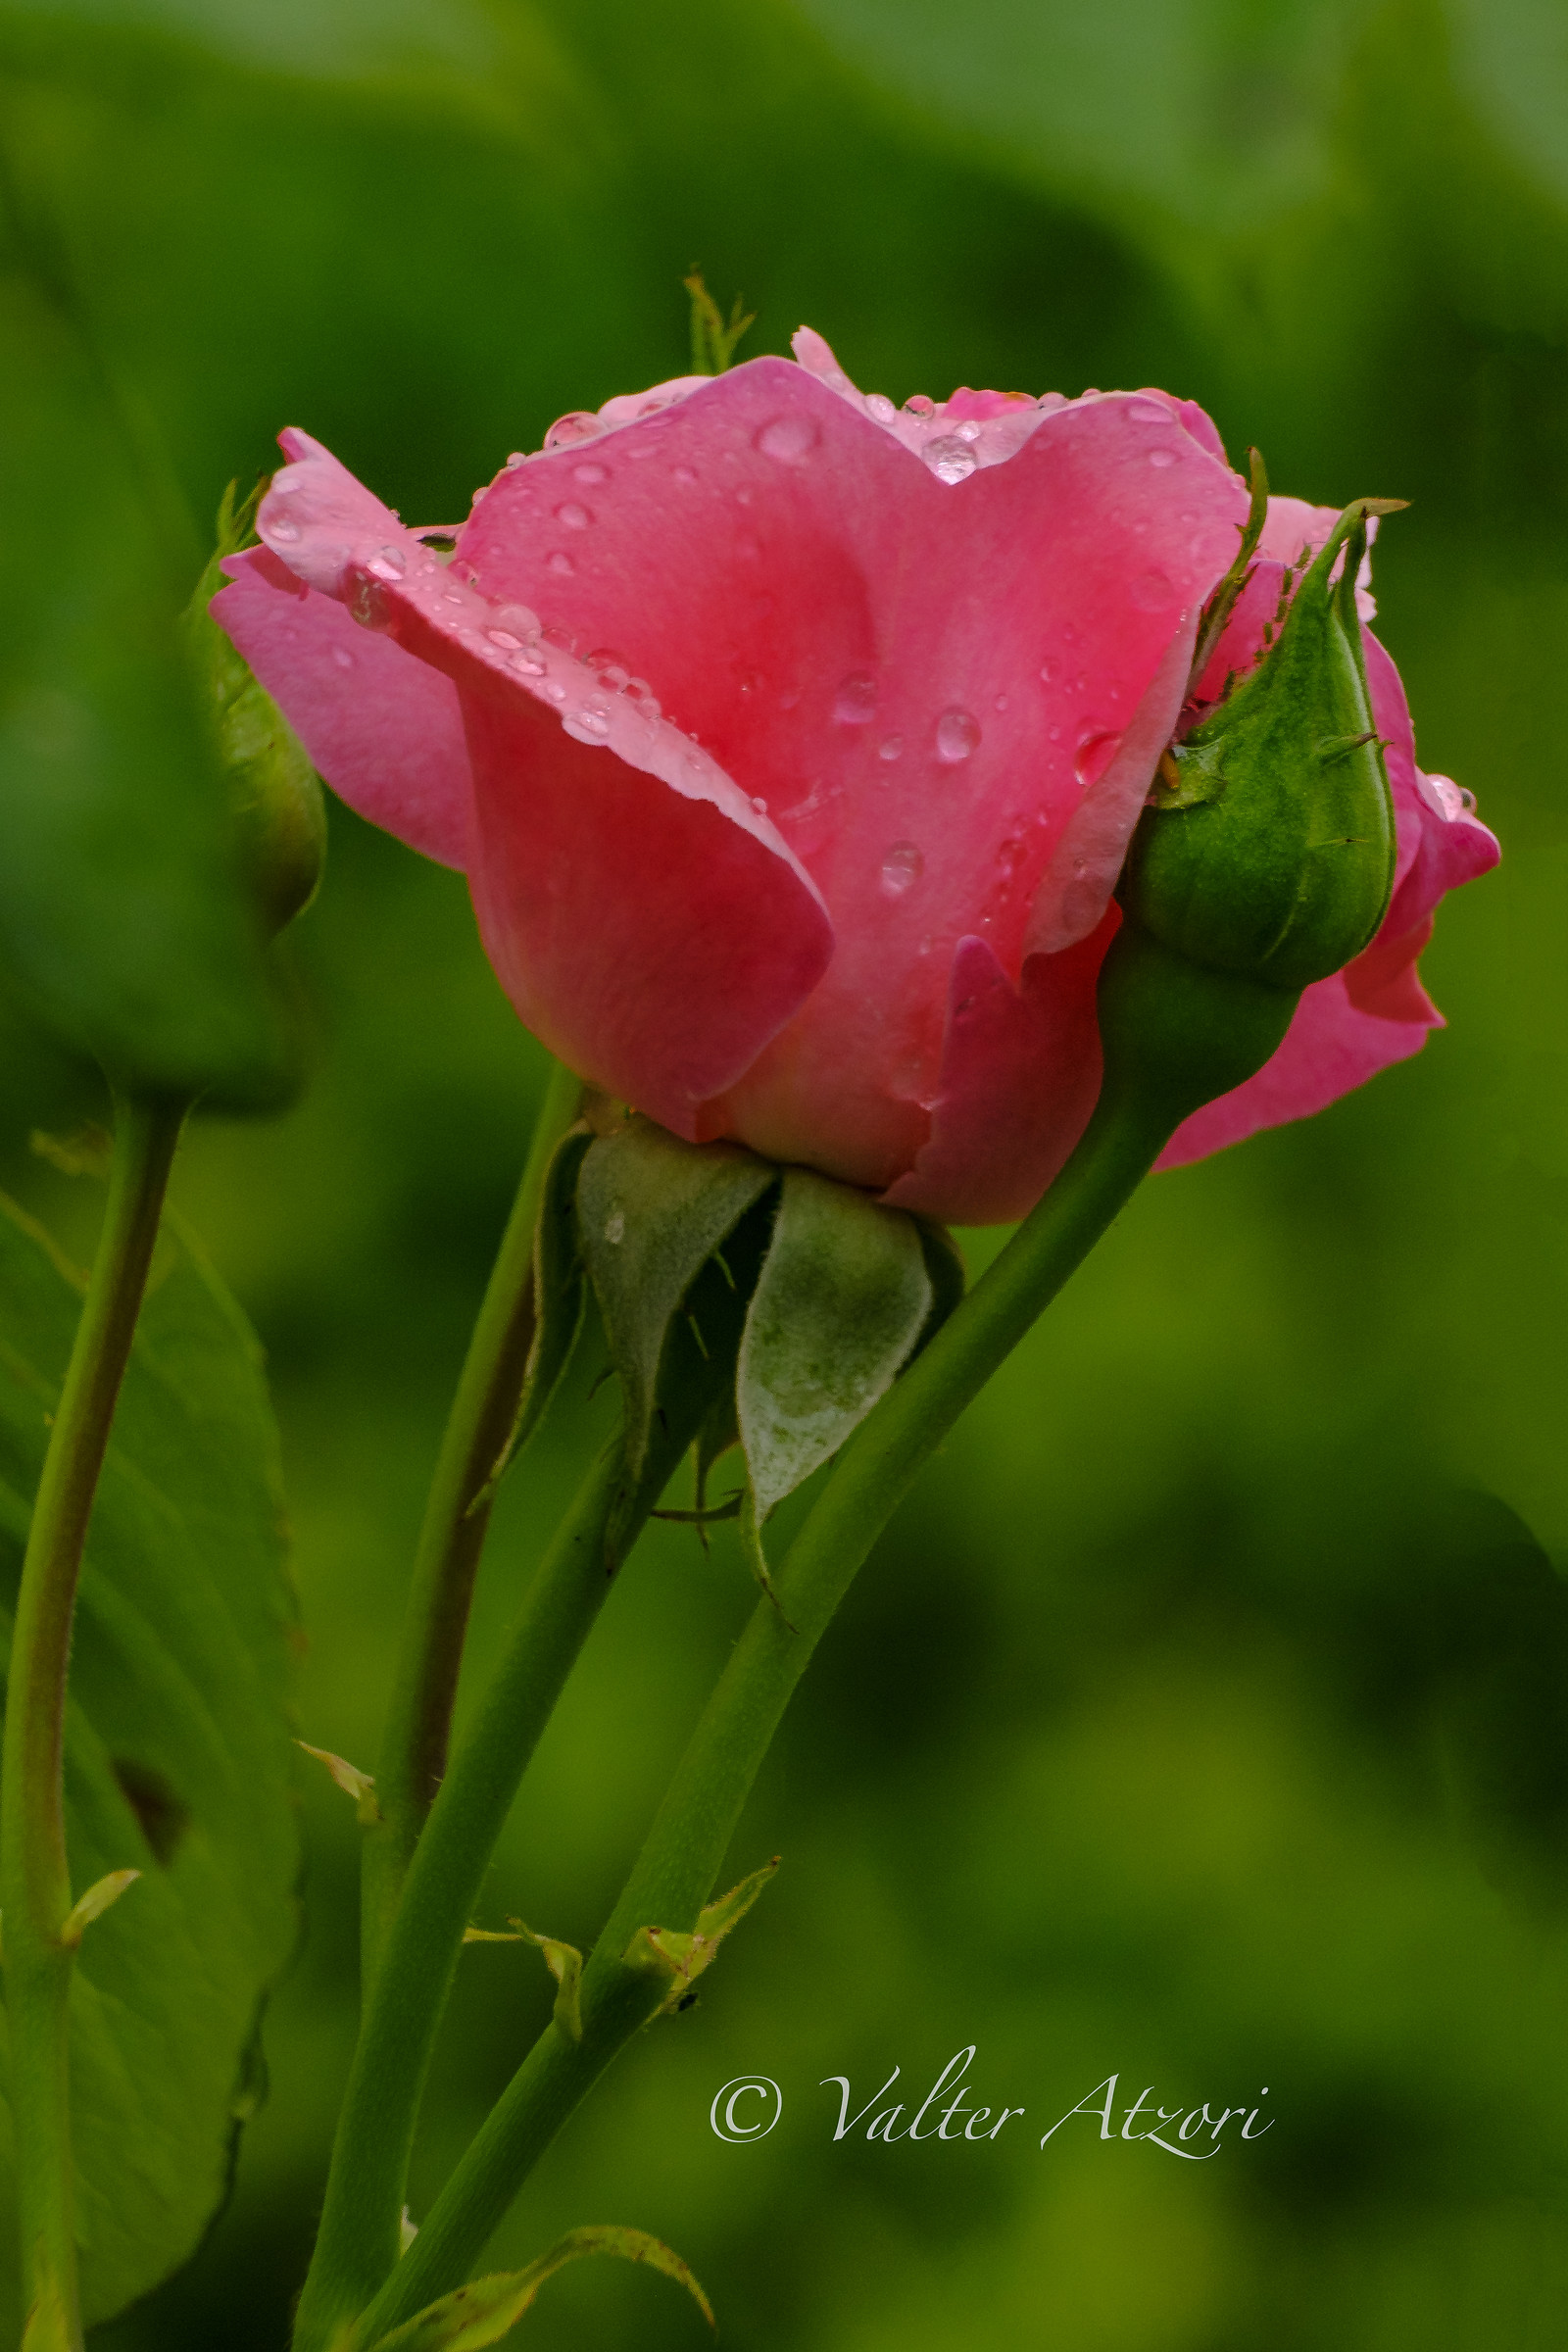 Wet rose bud...